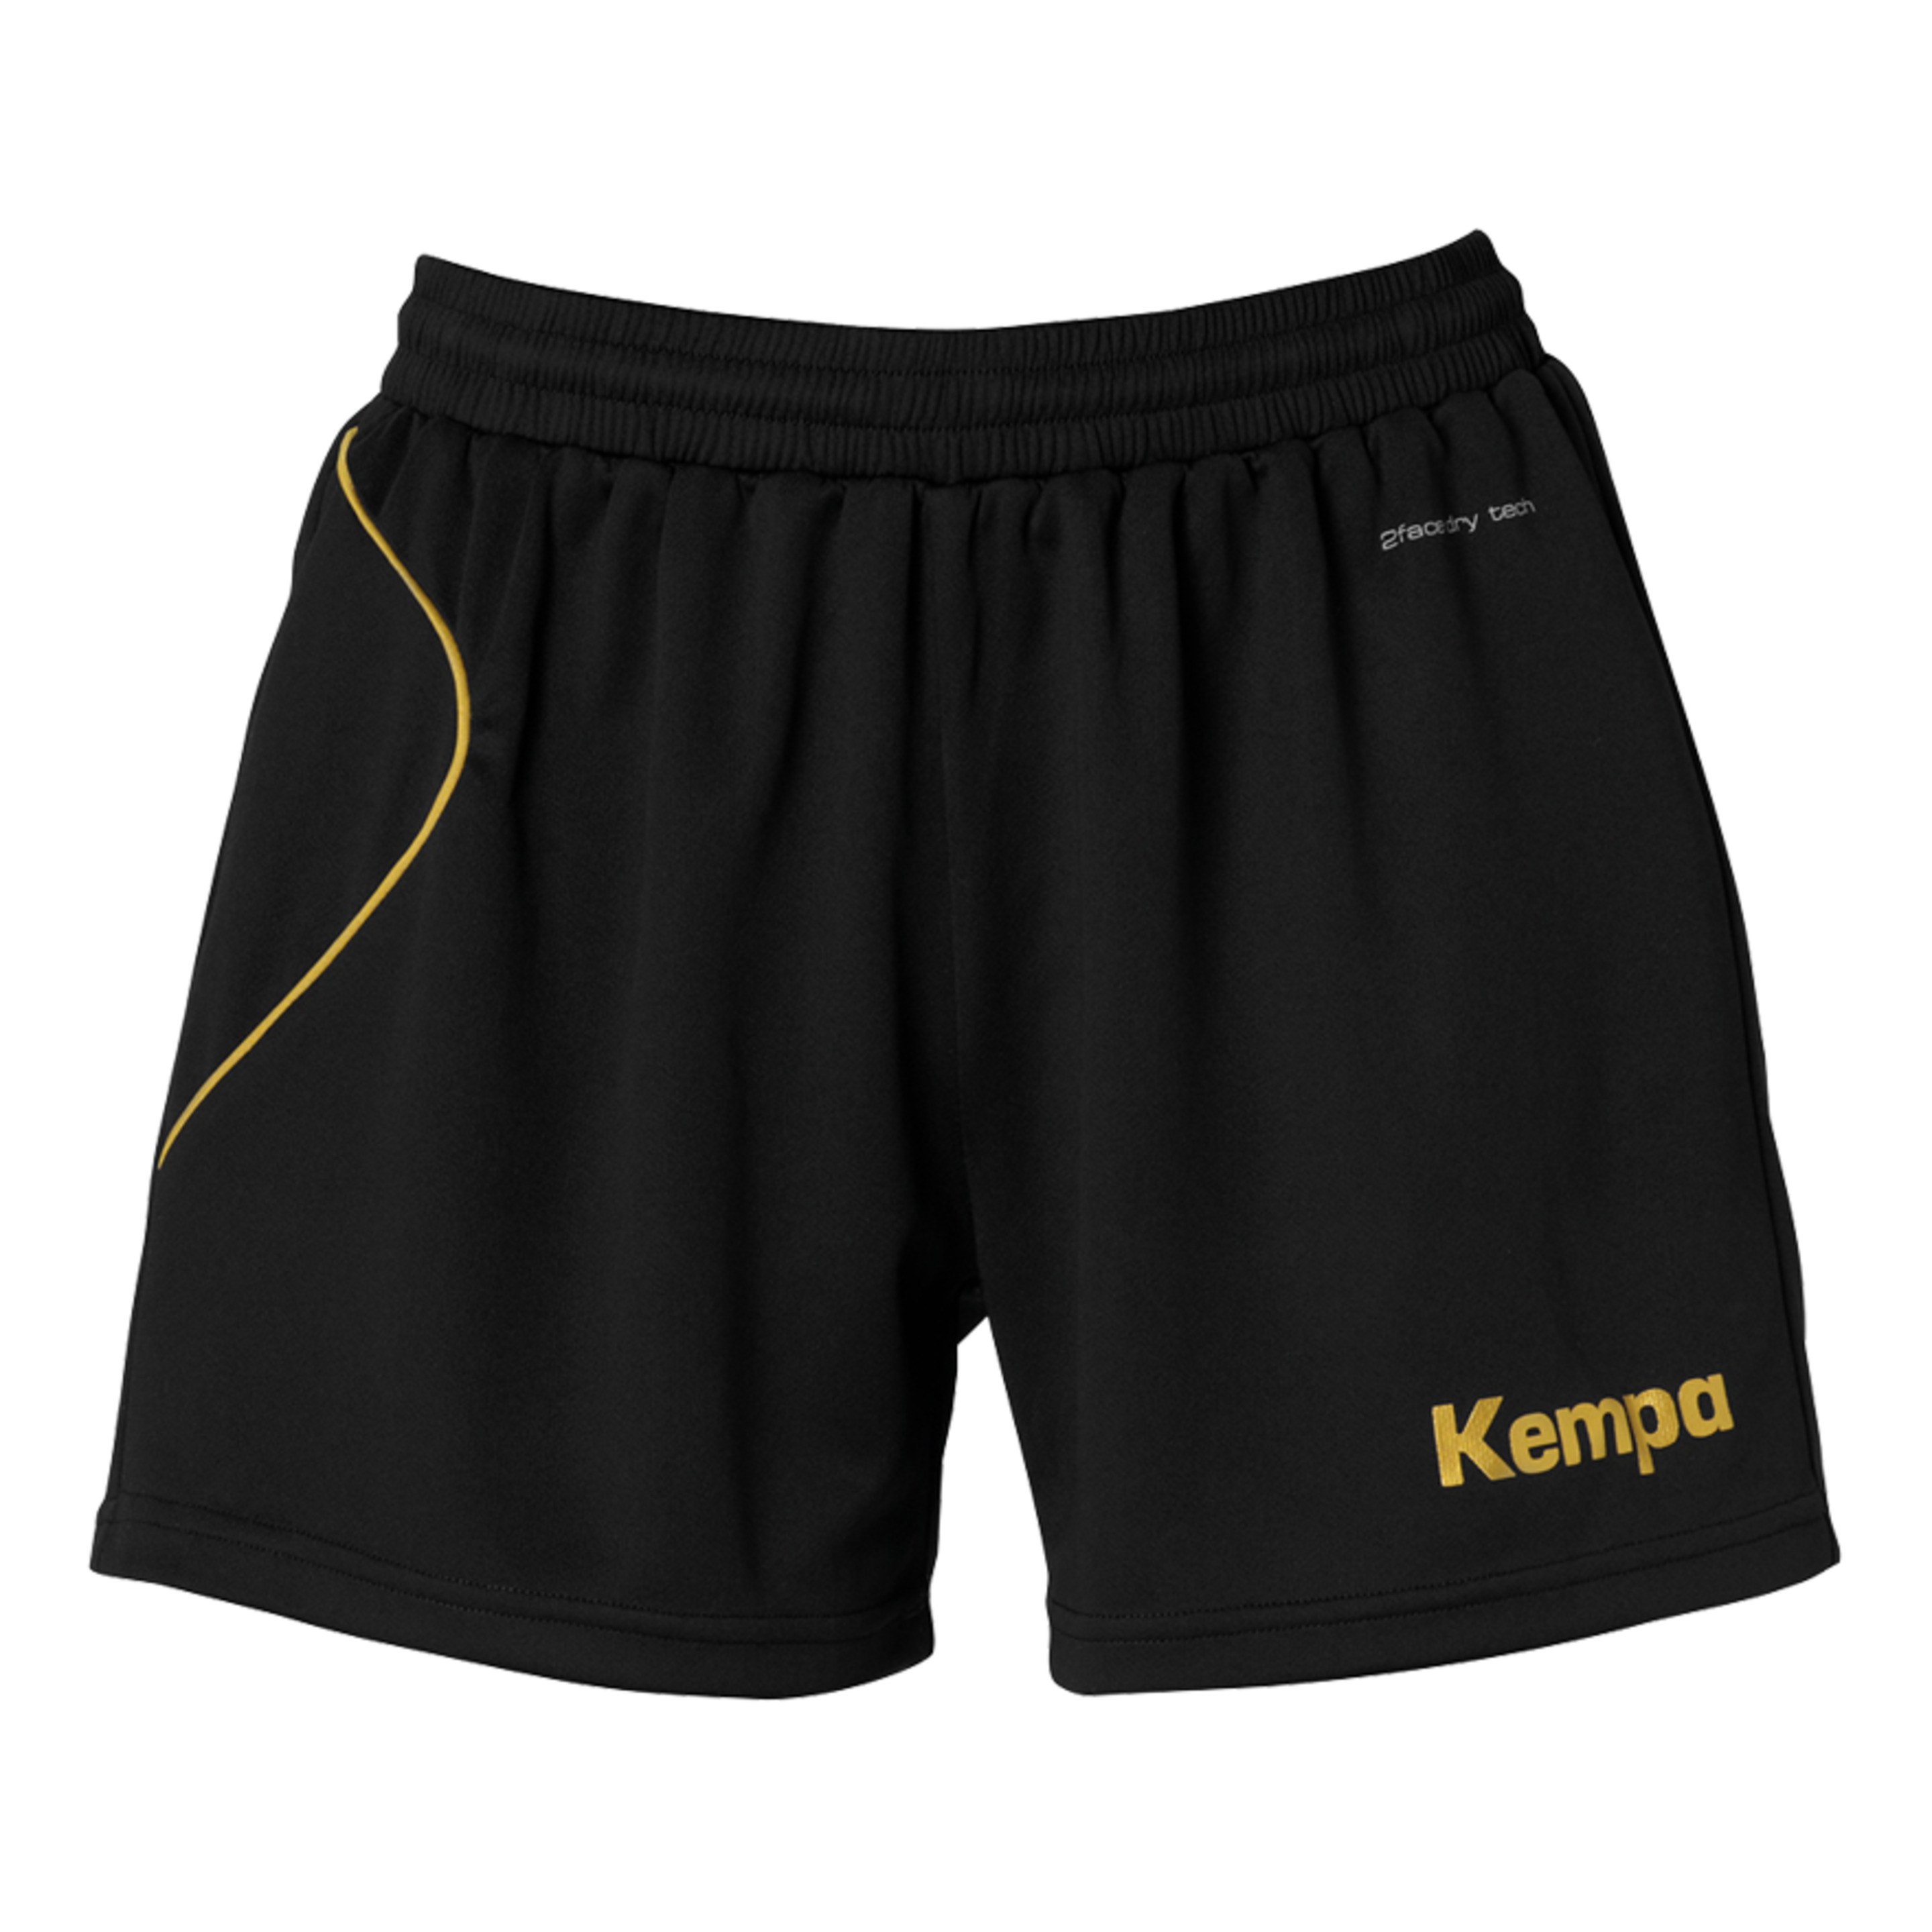 Curve Shorts De Mujer Negro/dorado Kempa - negro - Curve Shorts De Mujer Negro/dorado Kempa  MKP